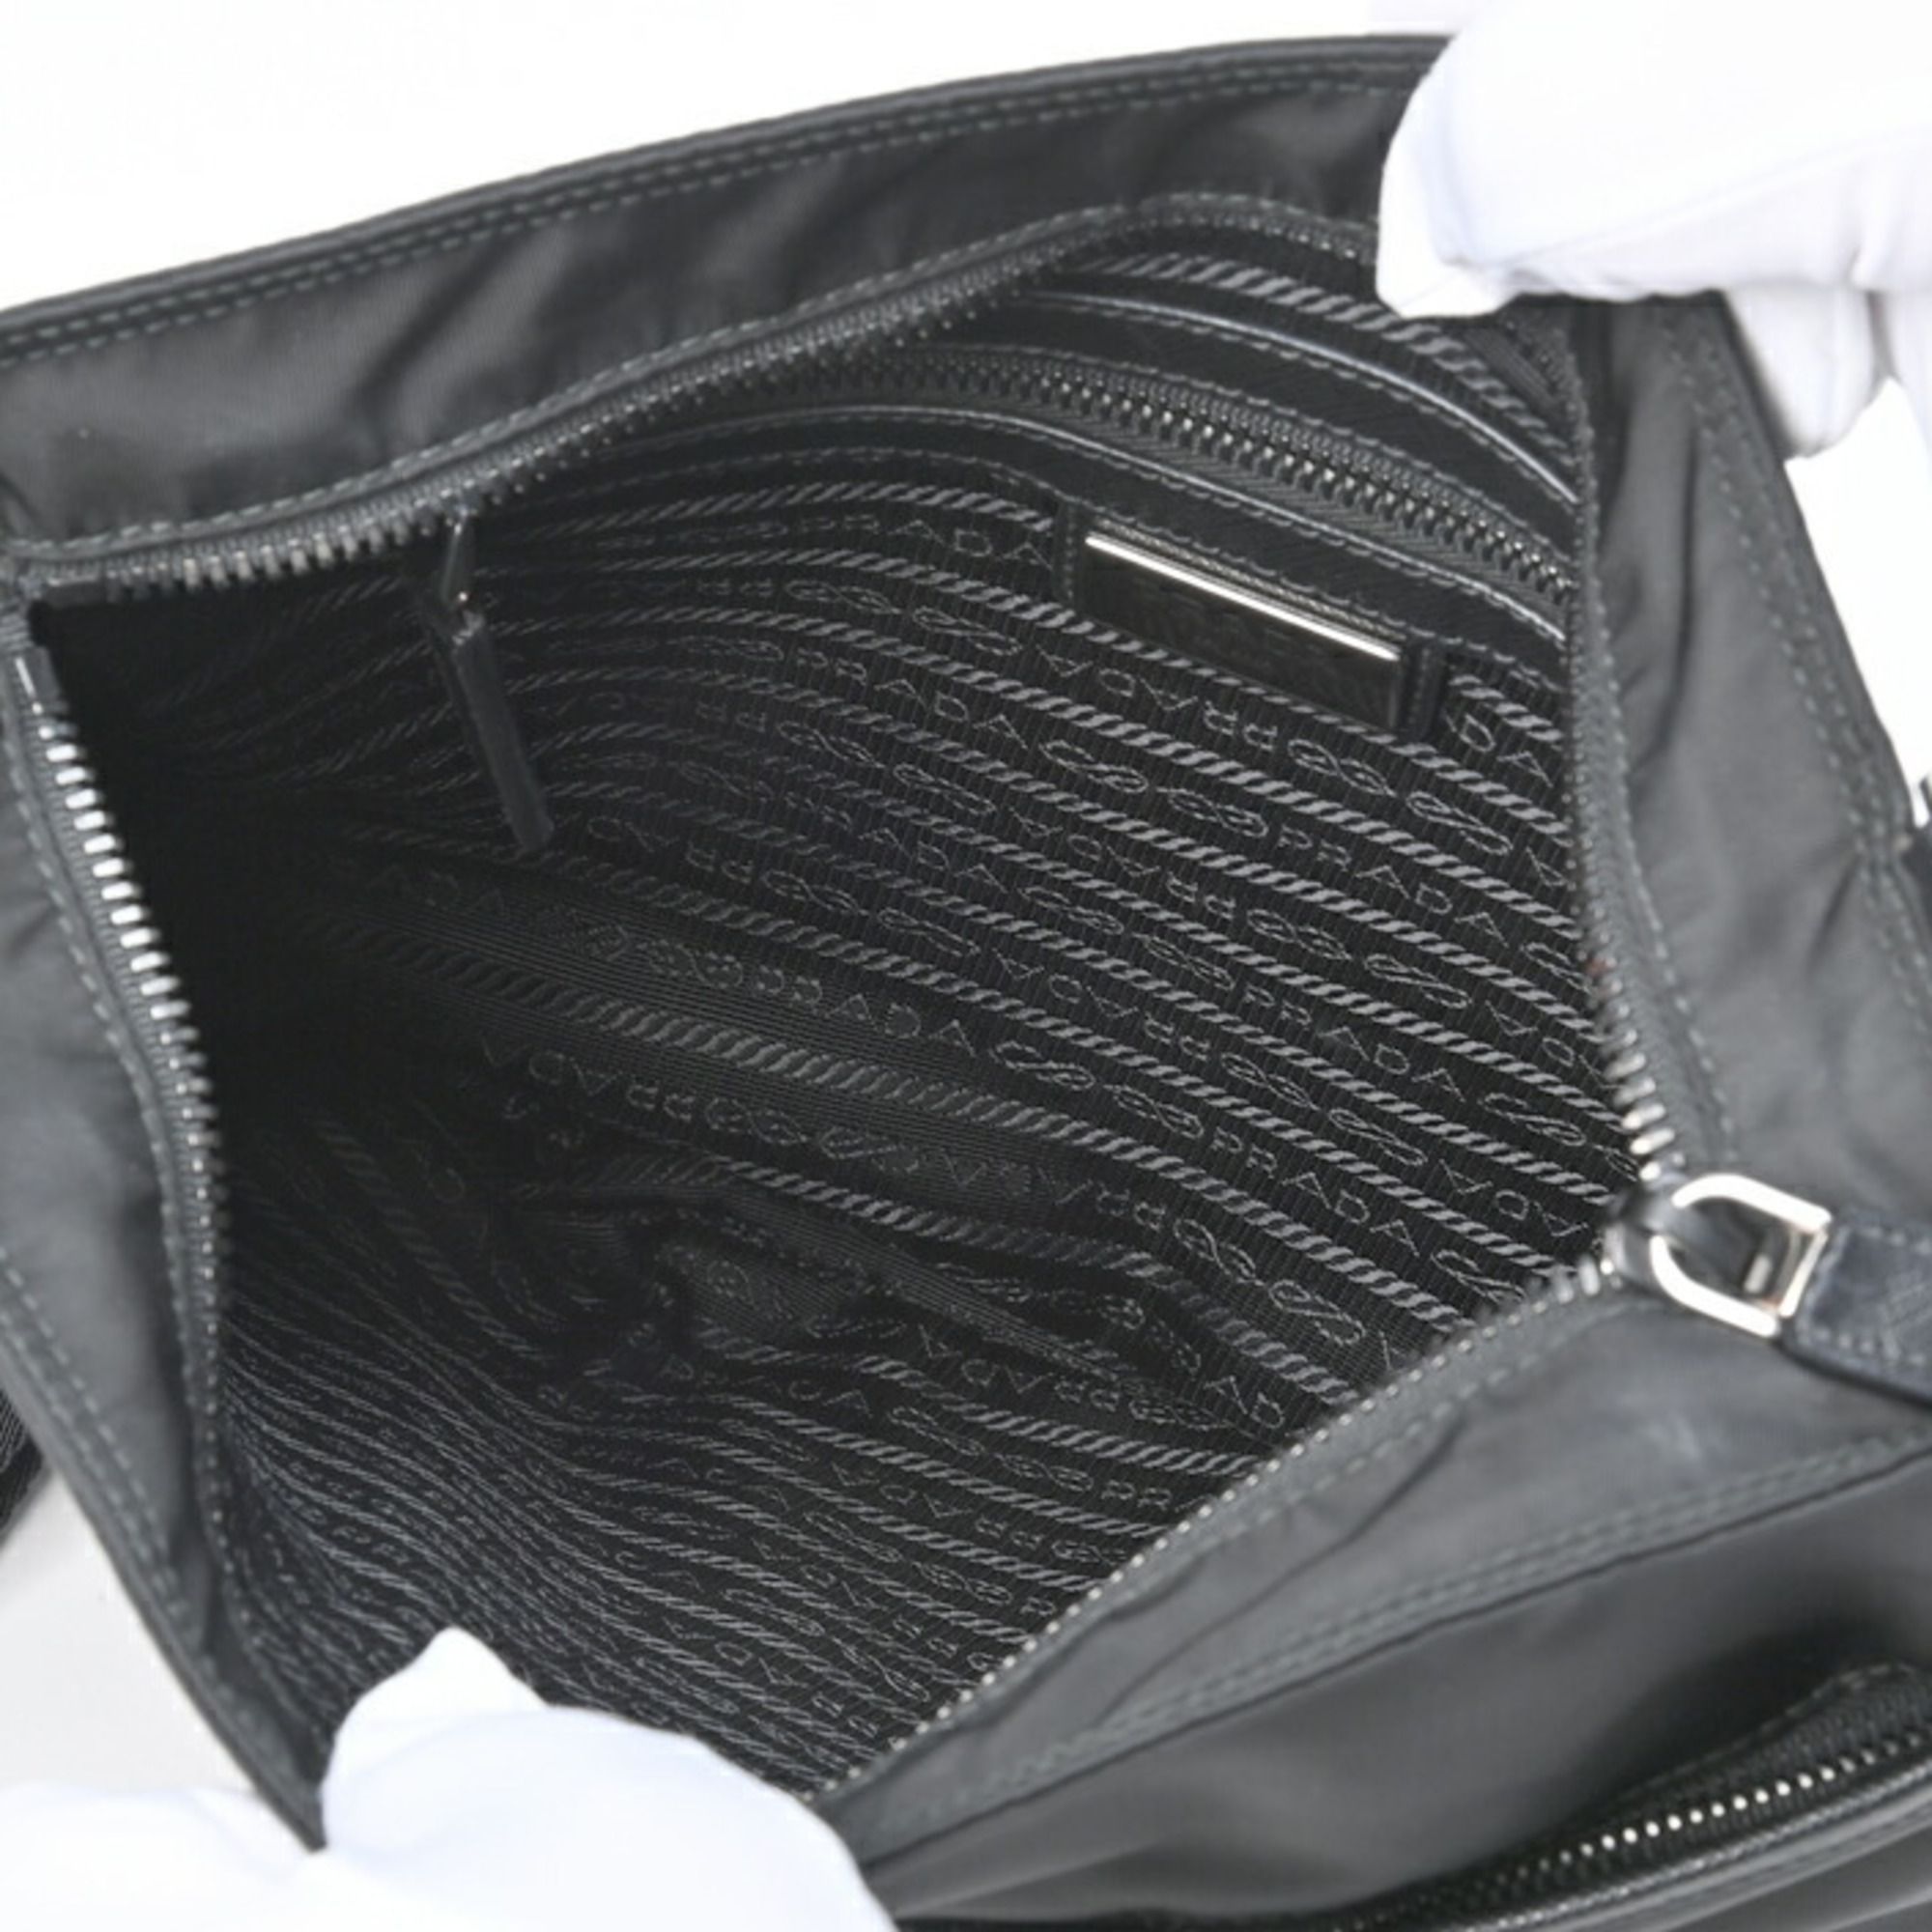 Prada nylon shoulder bag 2VH053 black S-153901